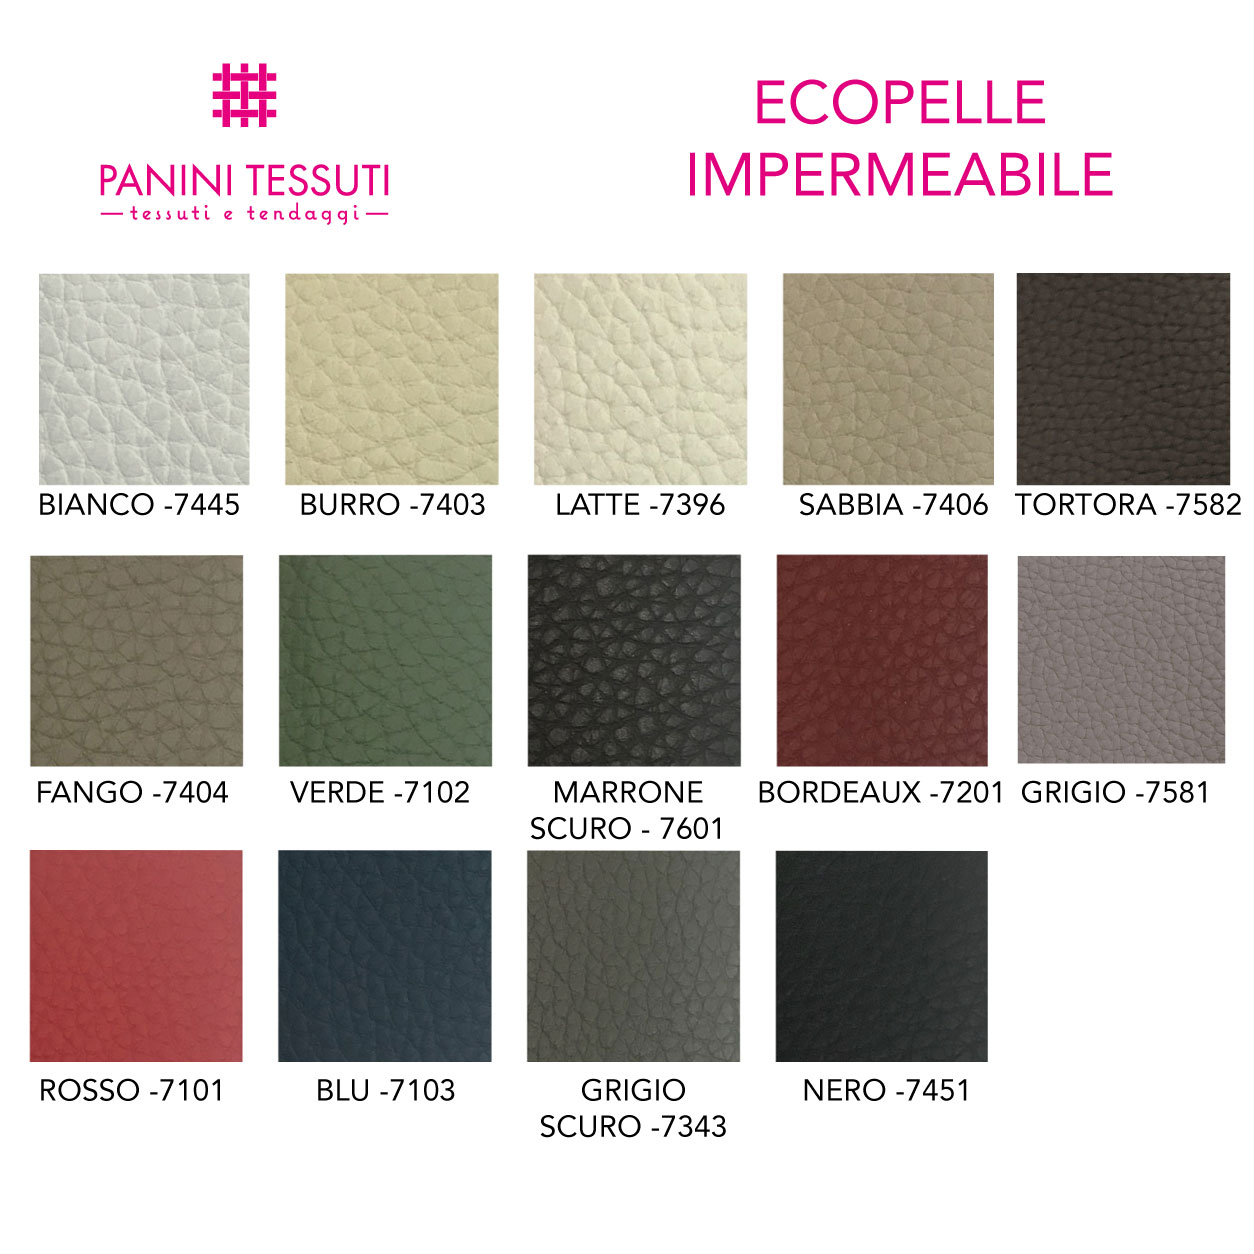 Ecopelle impermeabile cartella colore shopware (10)